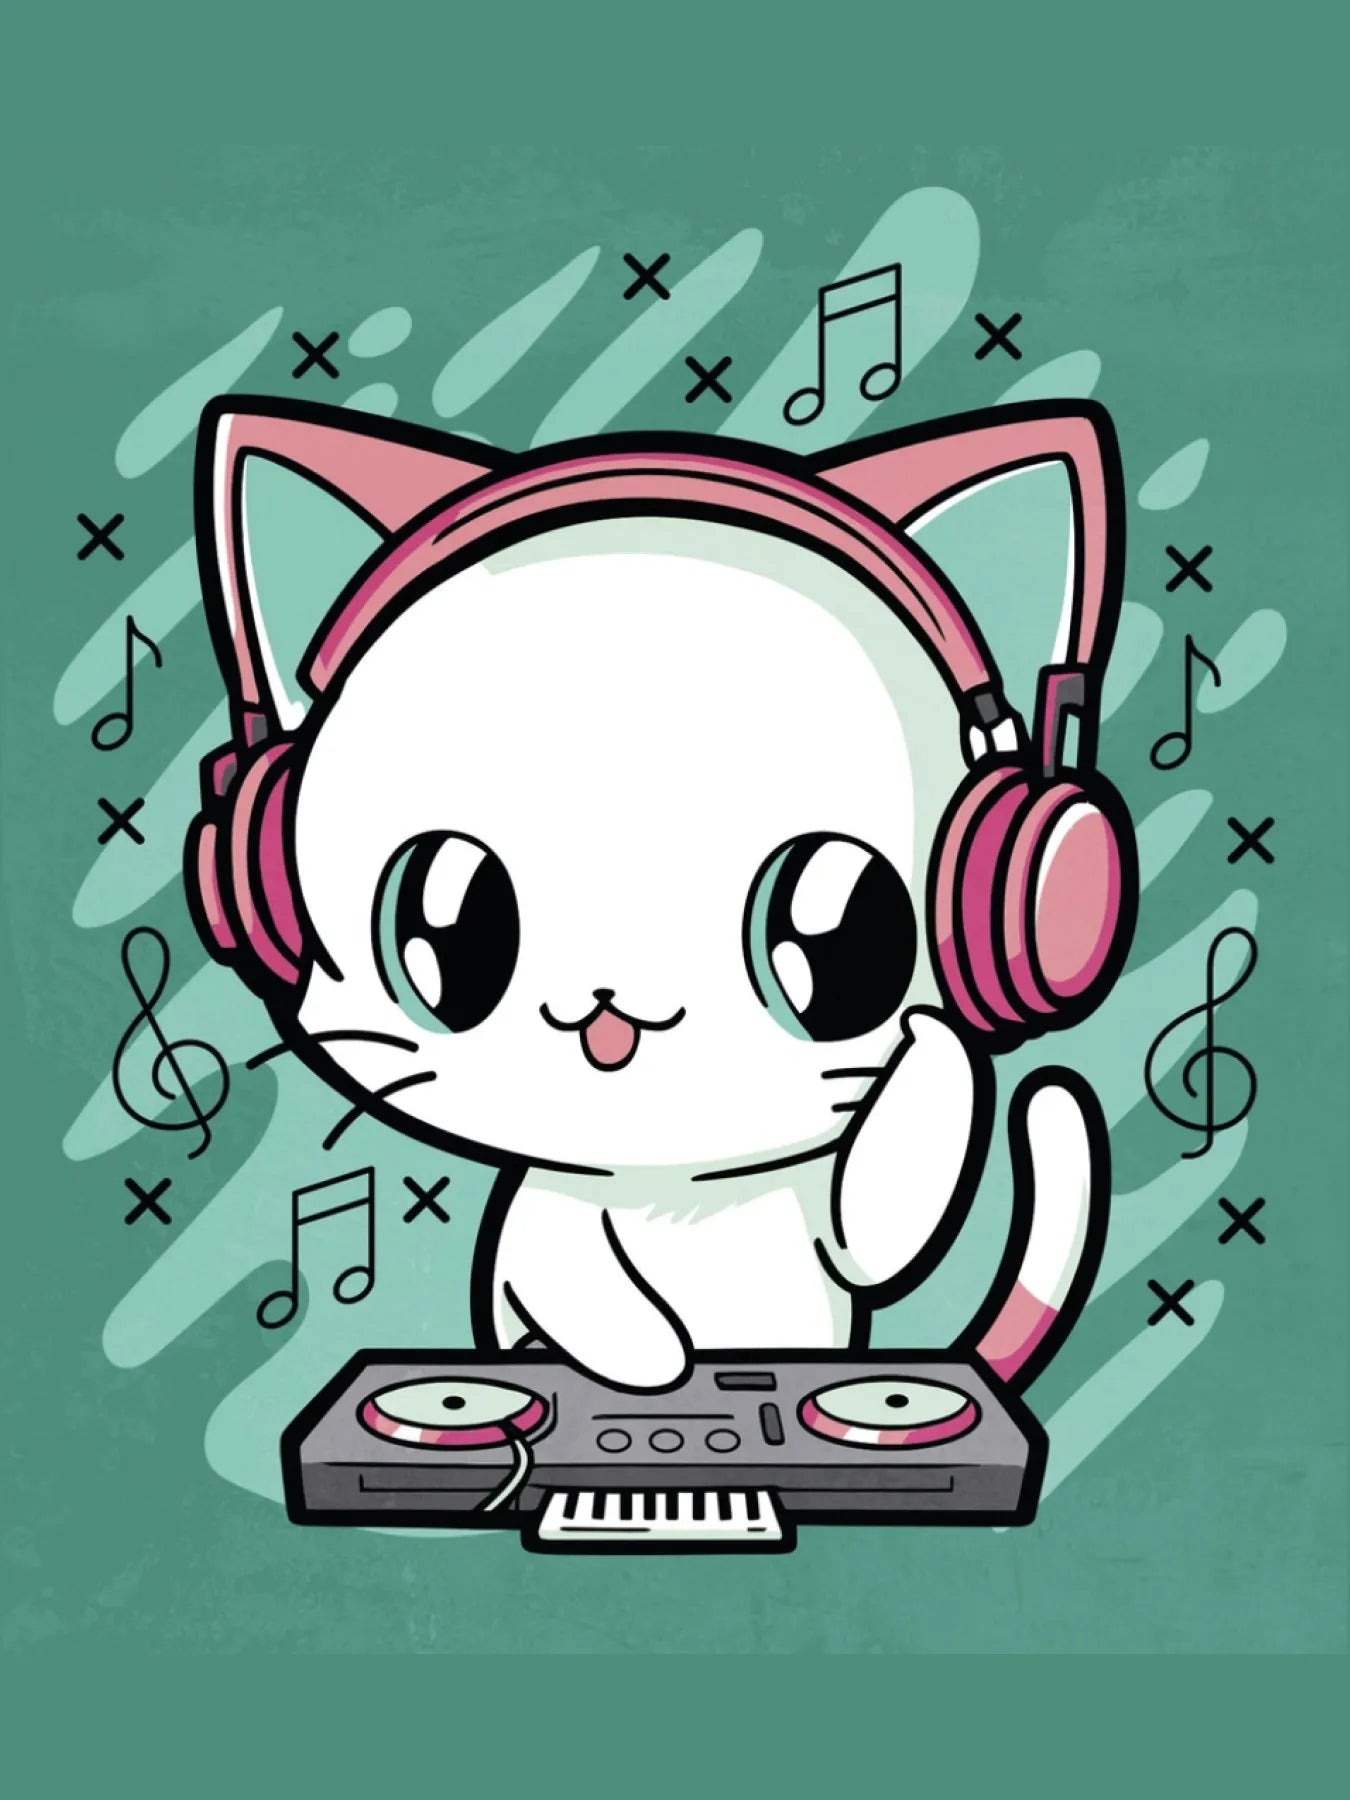 A DJ cat